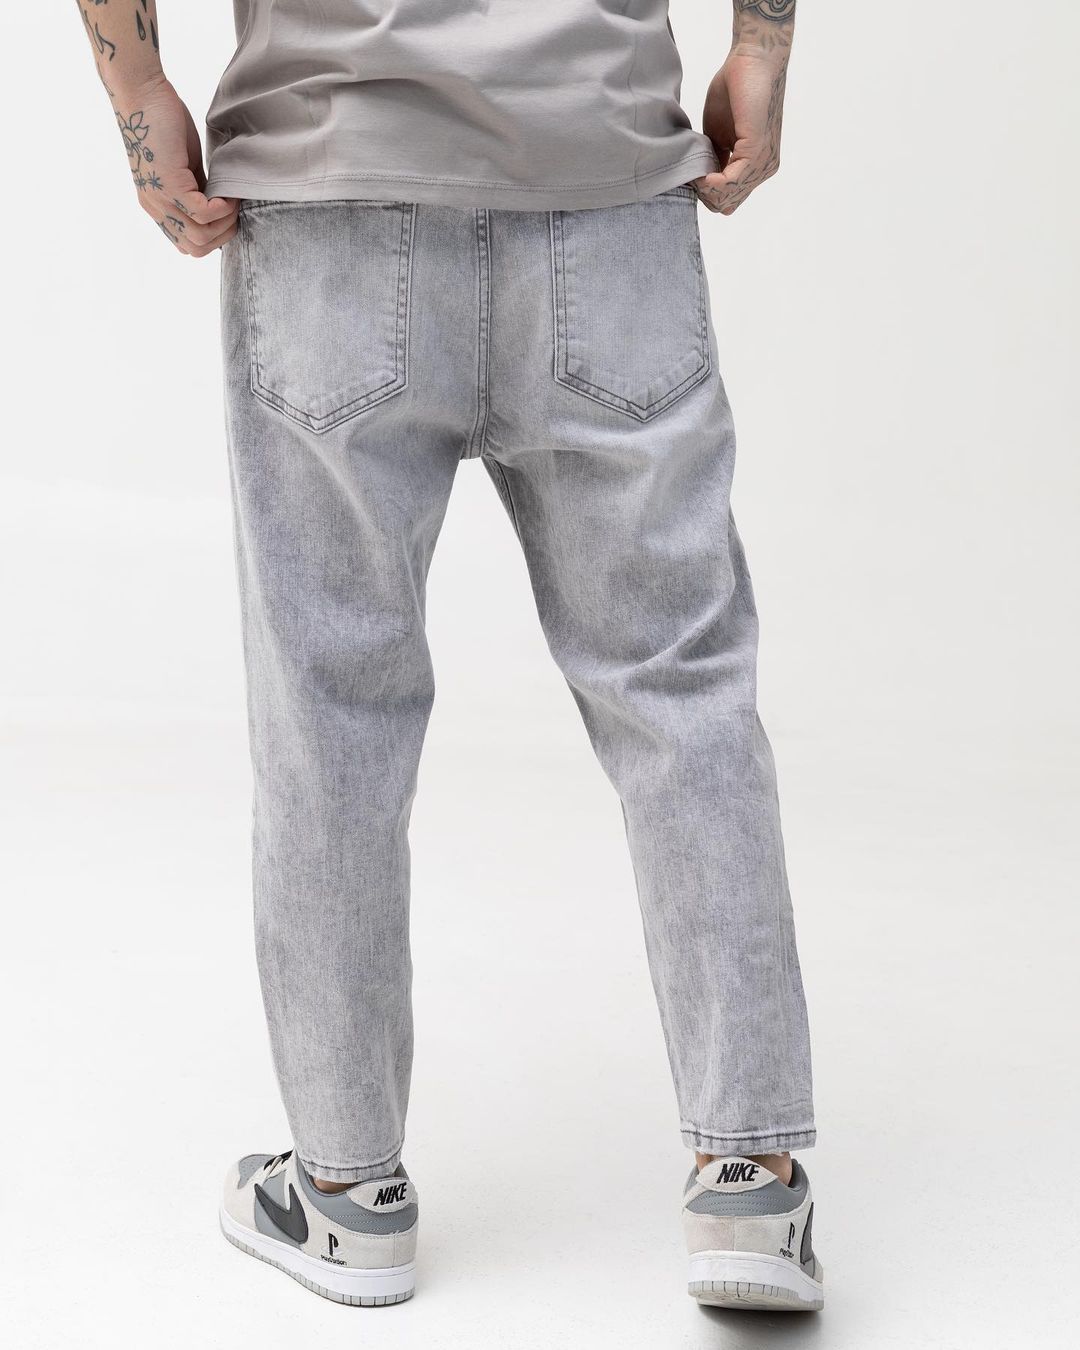 Чоловічі світло-сірі джинси BEZET базові - Фото 1